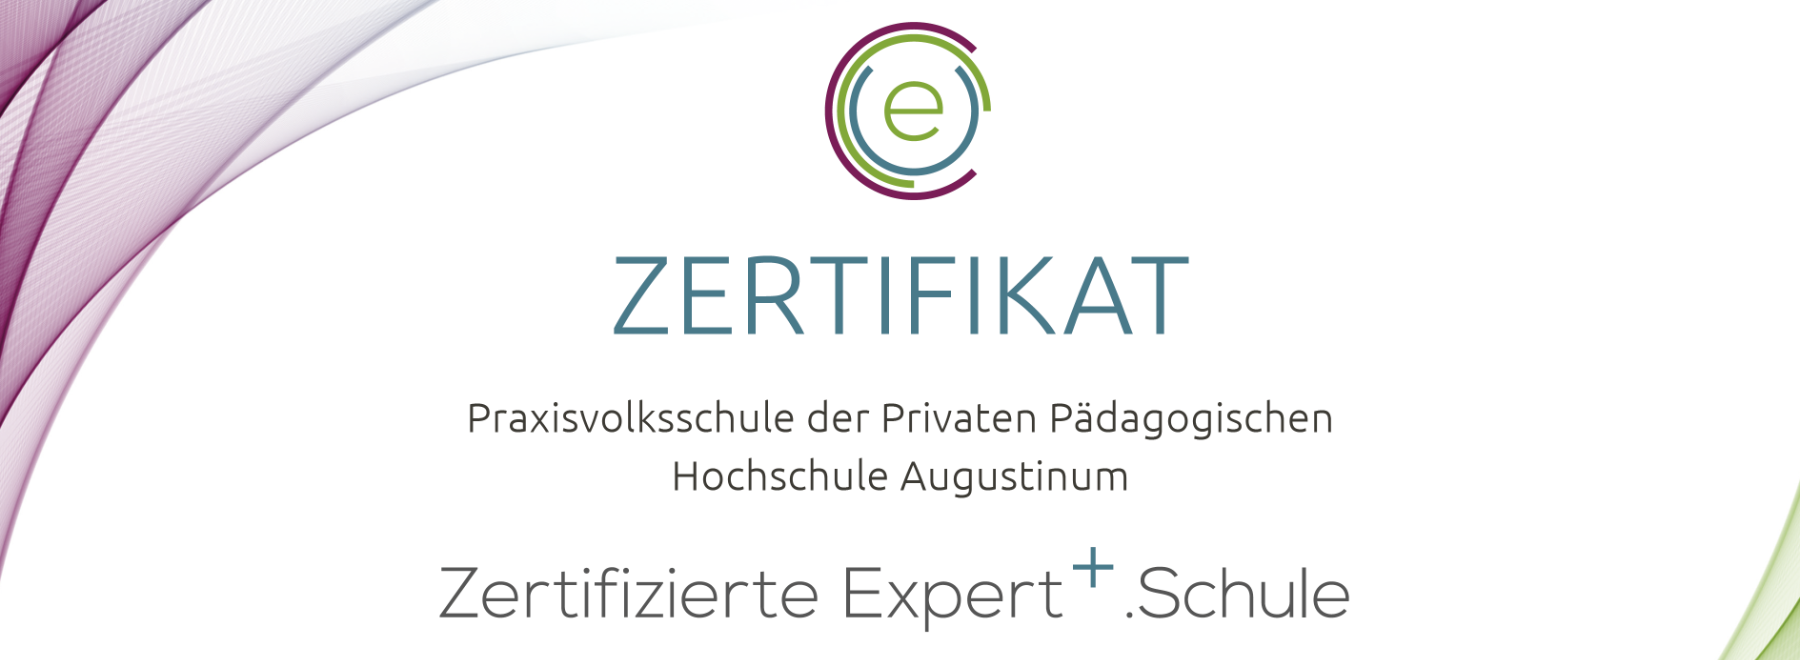 eEducation EXPERT+.SCHULE